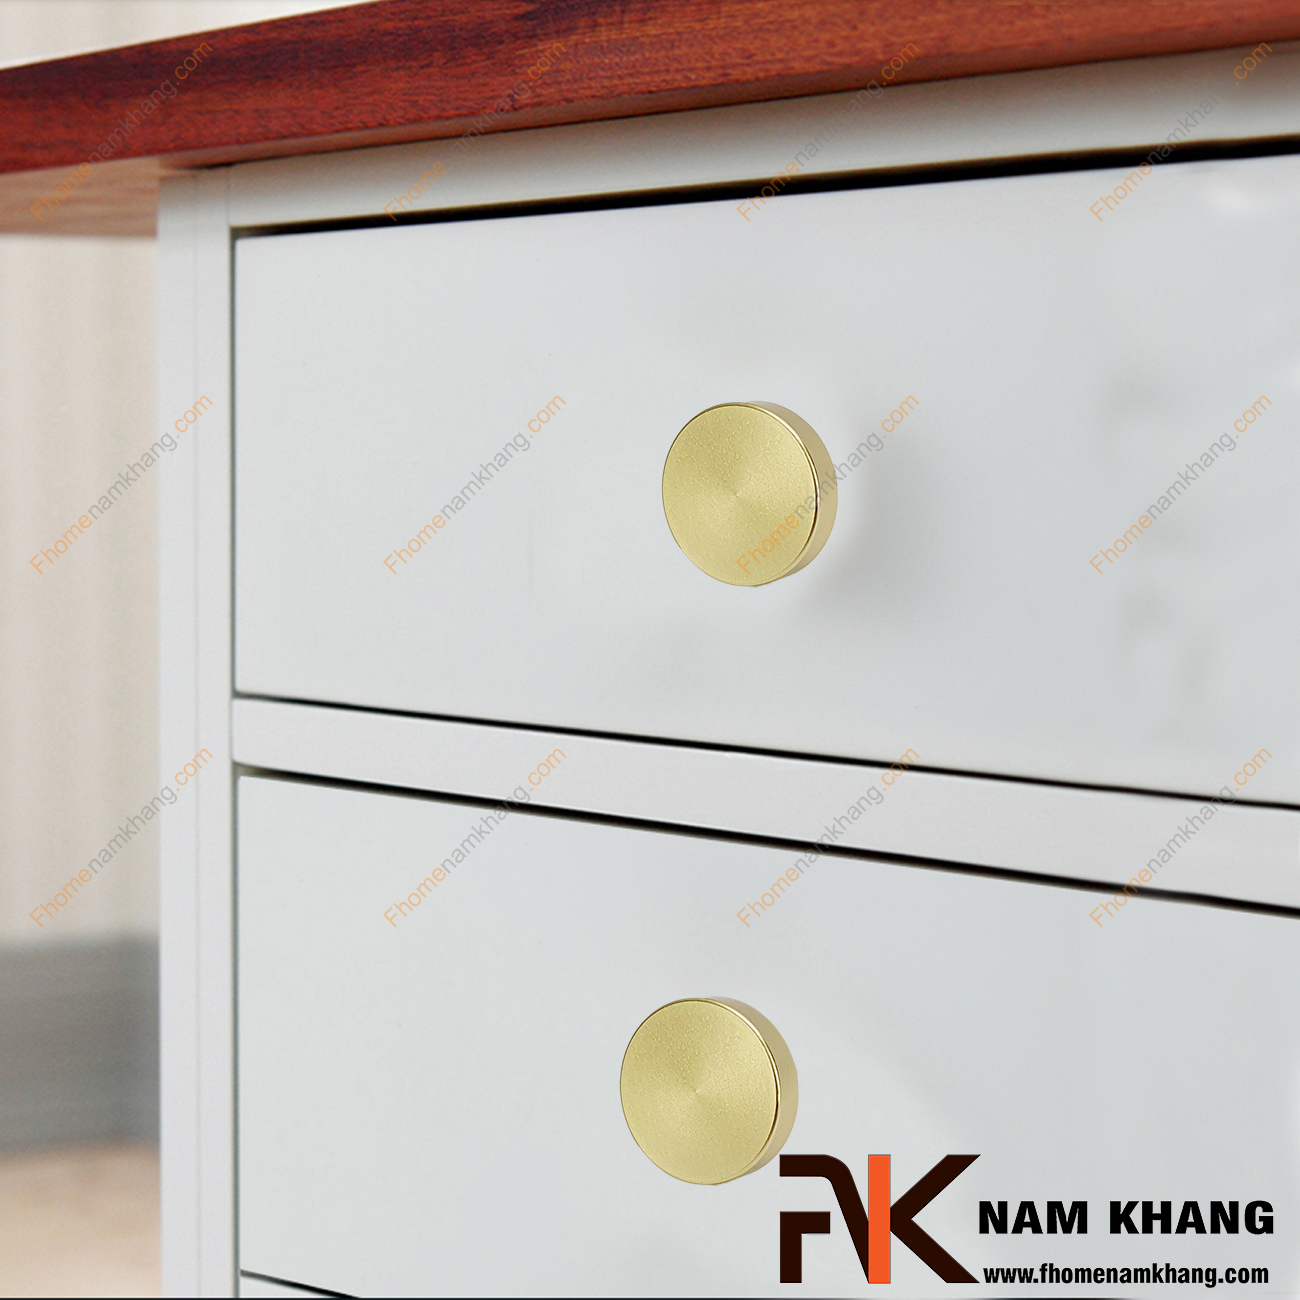 Một thiết kế rất đơn giản, một chất liệu chất lượng cao, một sản phẩm đáp ứng được tất cả các tiêu chí nội thất. - Núm cửa tủ dạng tròn màu vàng ánh kim NK267-NV